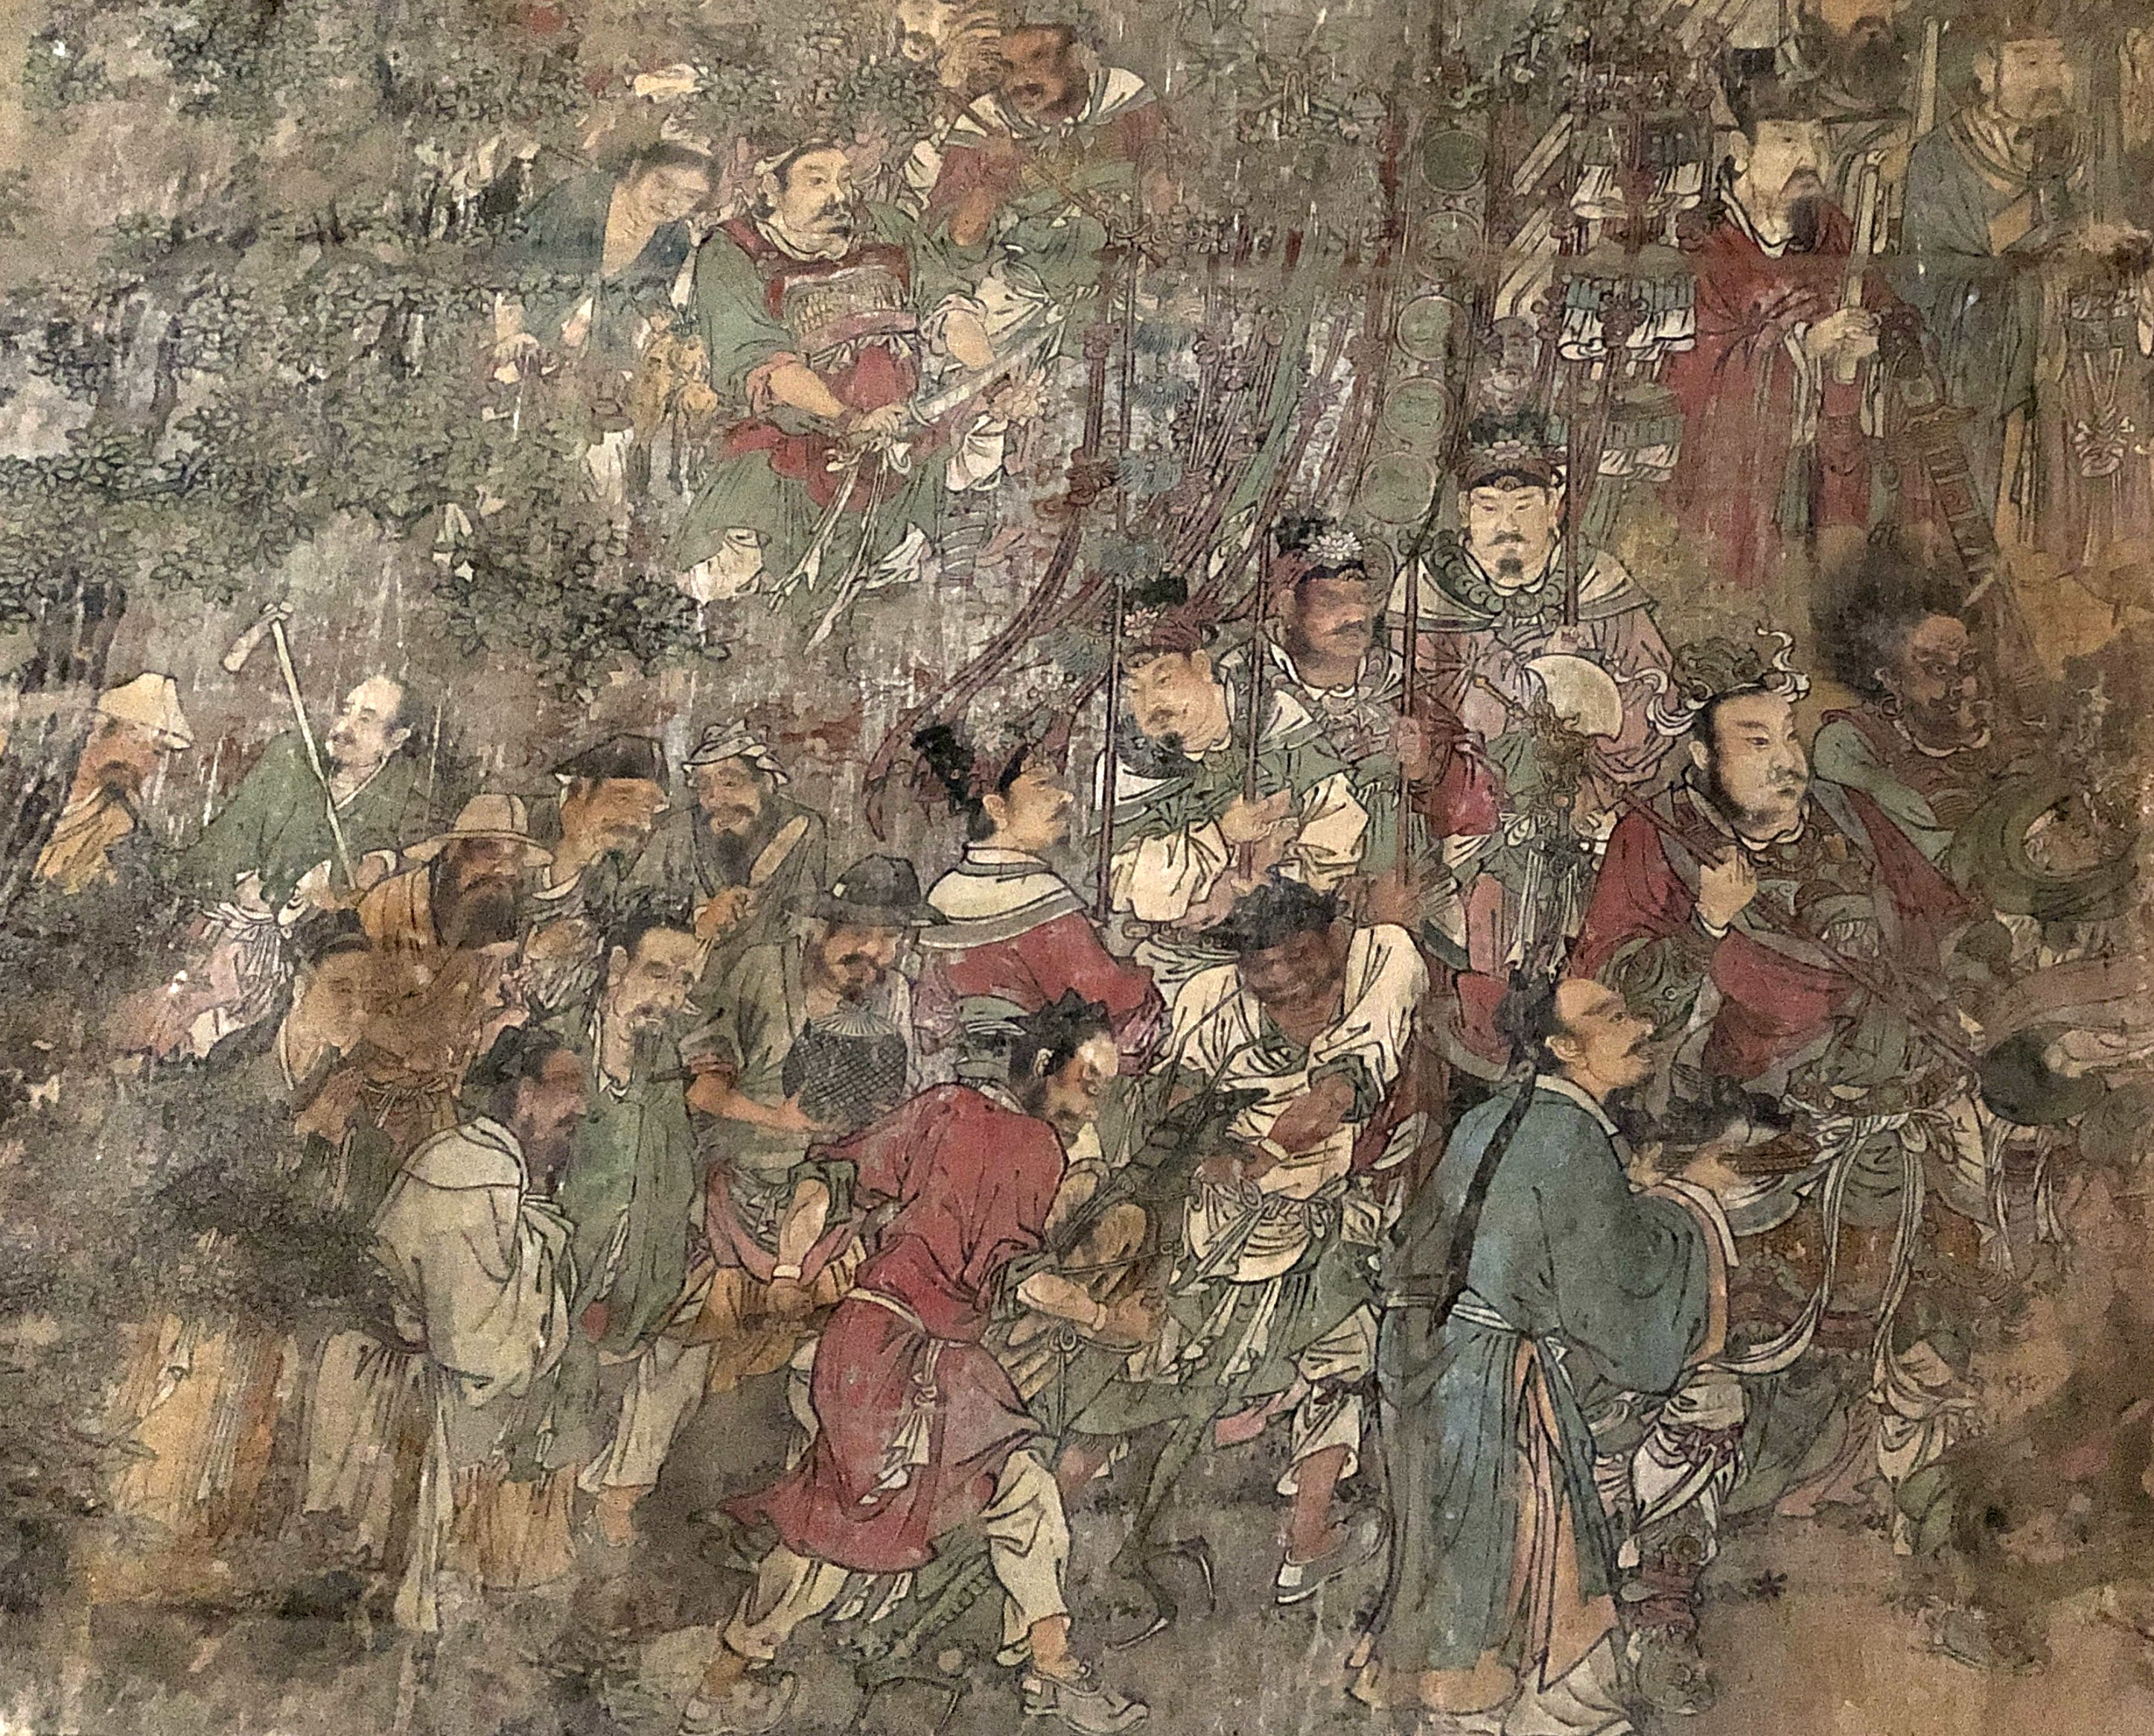 明代壁画に描かれた中国の古代農業 中国 山西省 写真10枚 国際ニュース Afpbb News